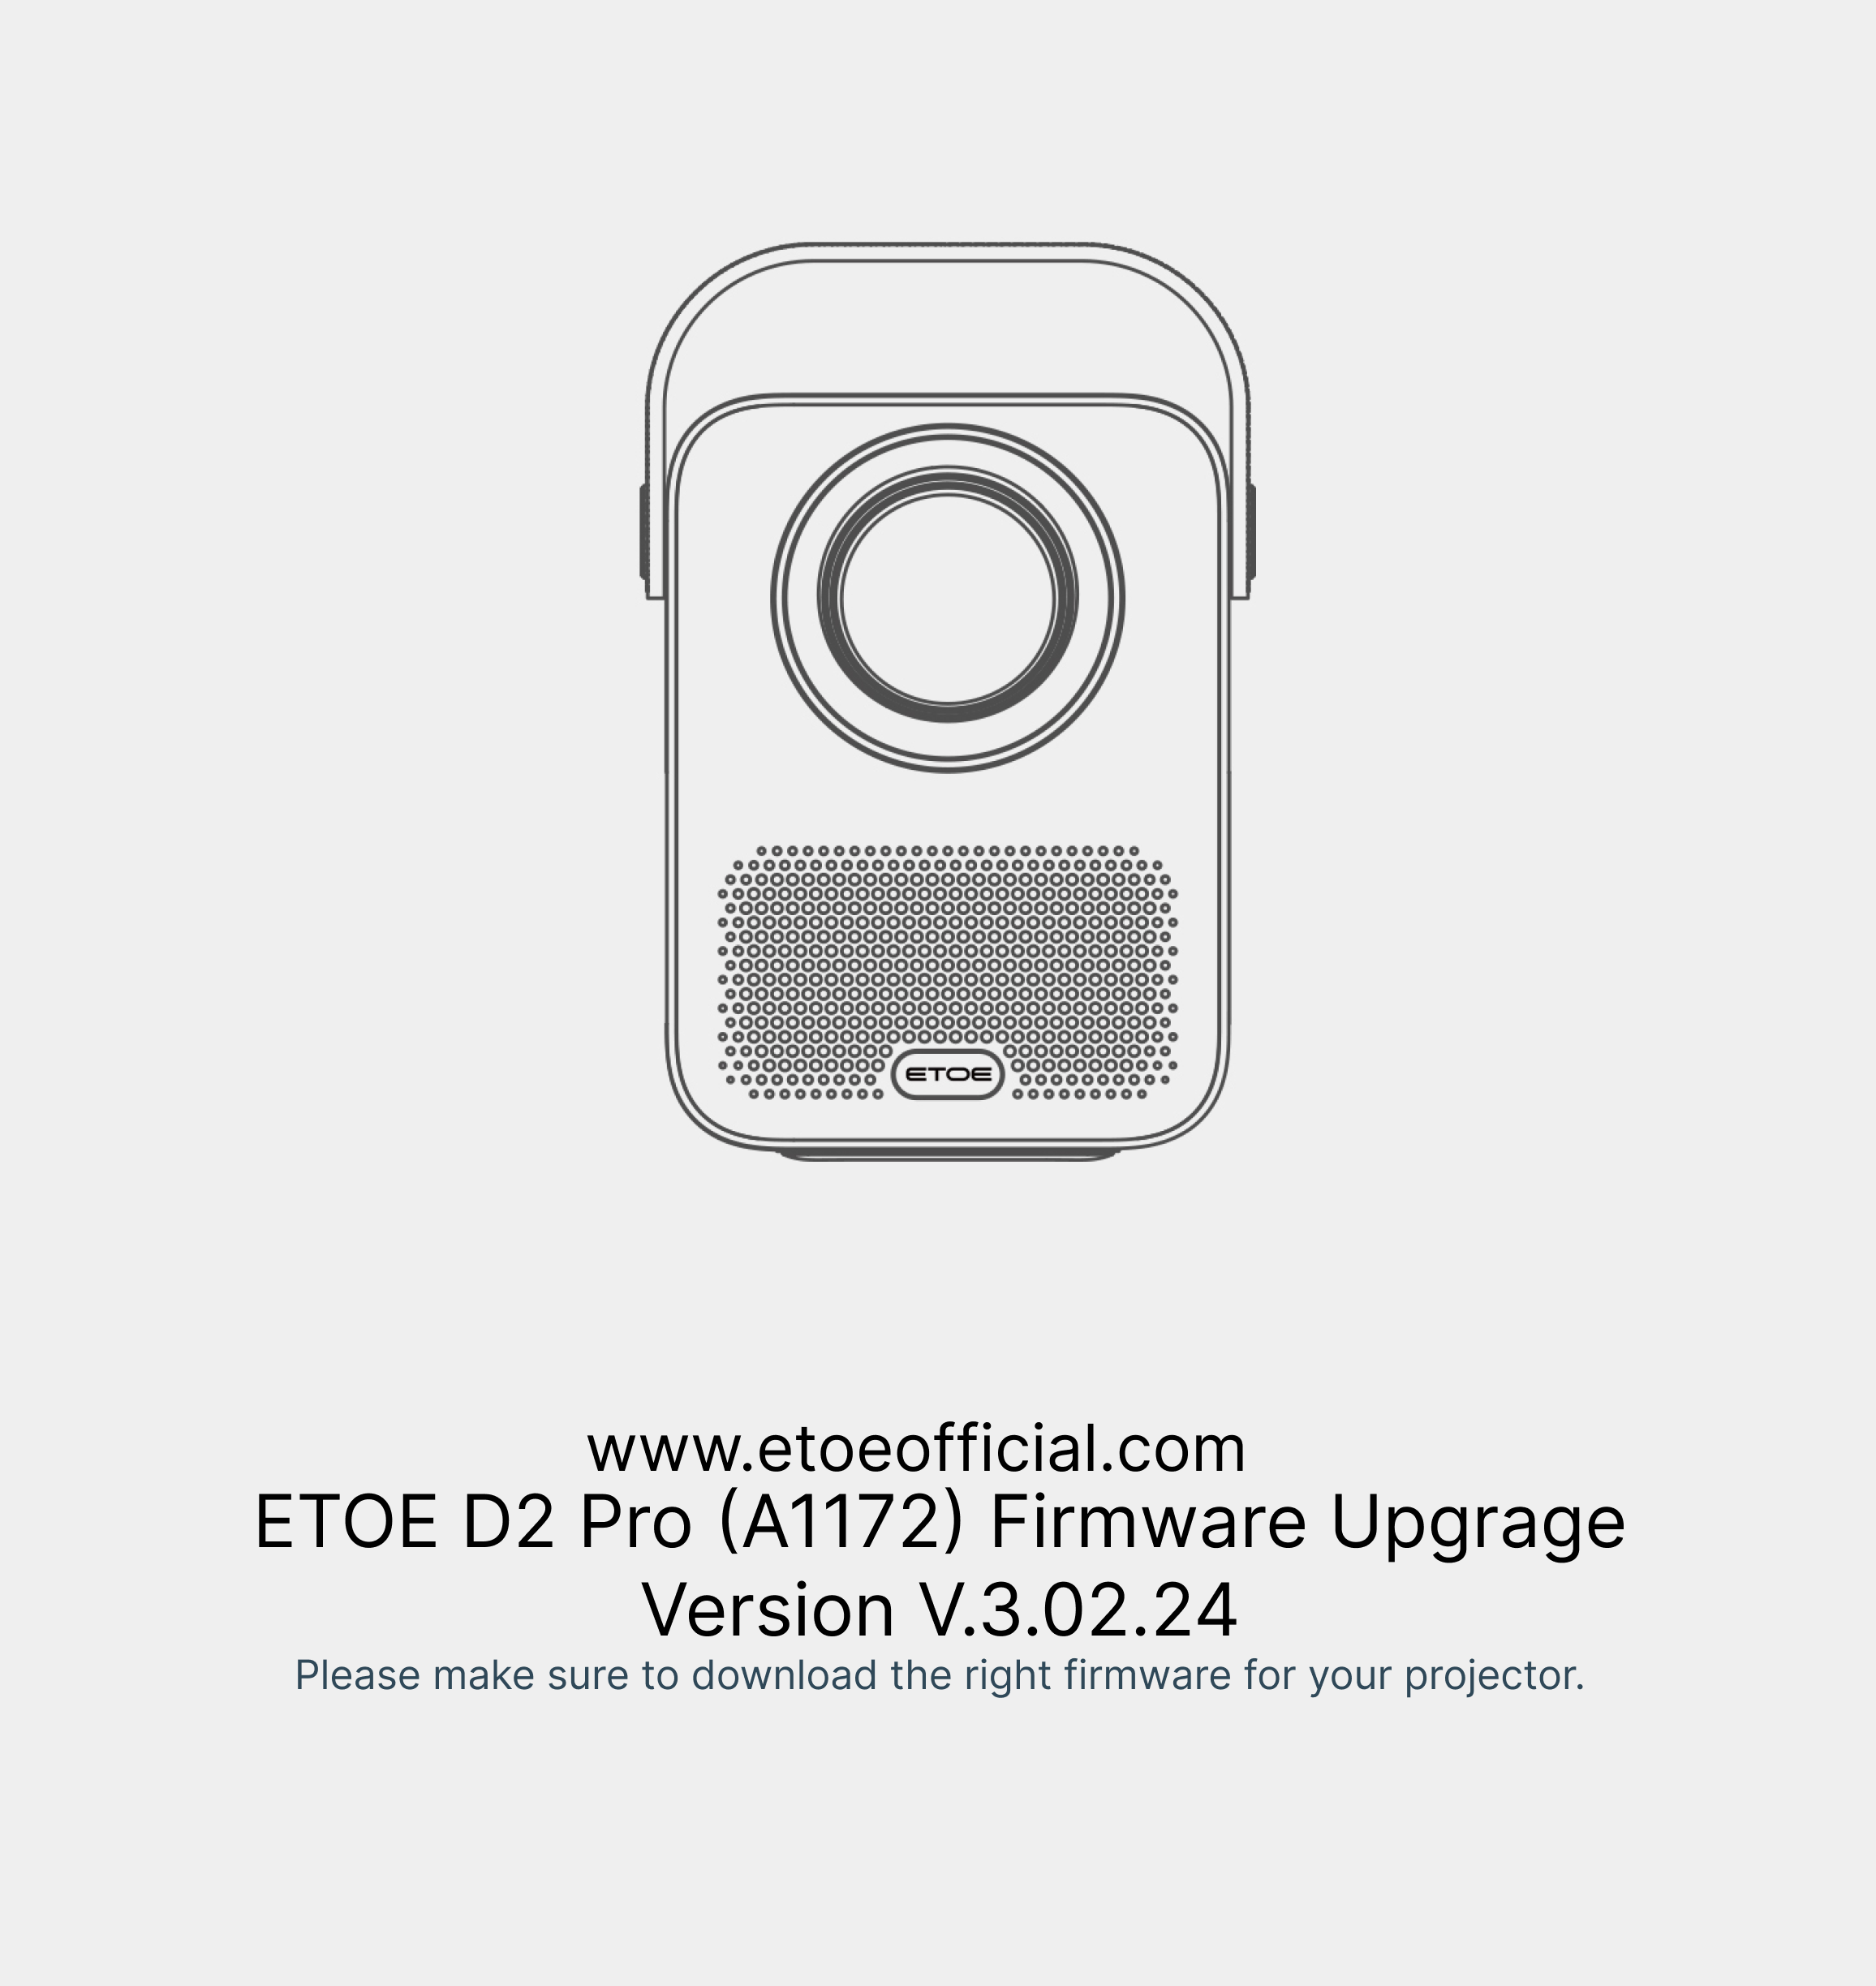 ETOE D2 Pro Firmware Upgrade